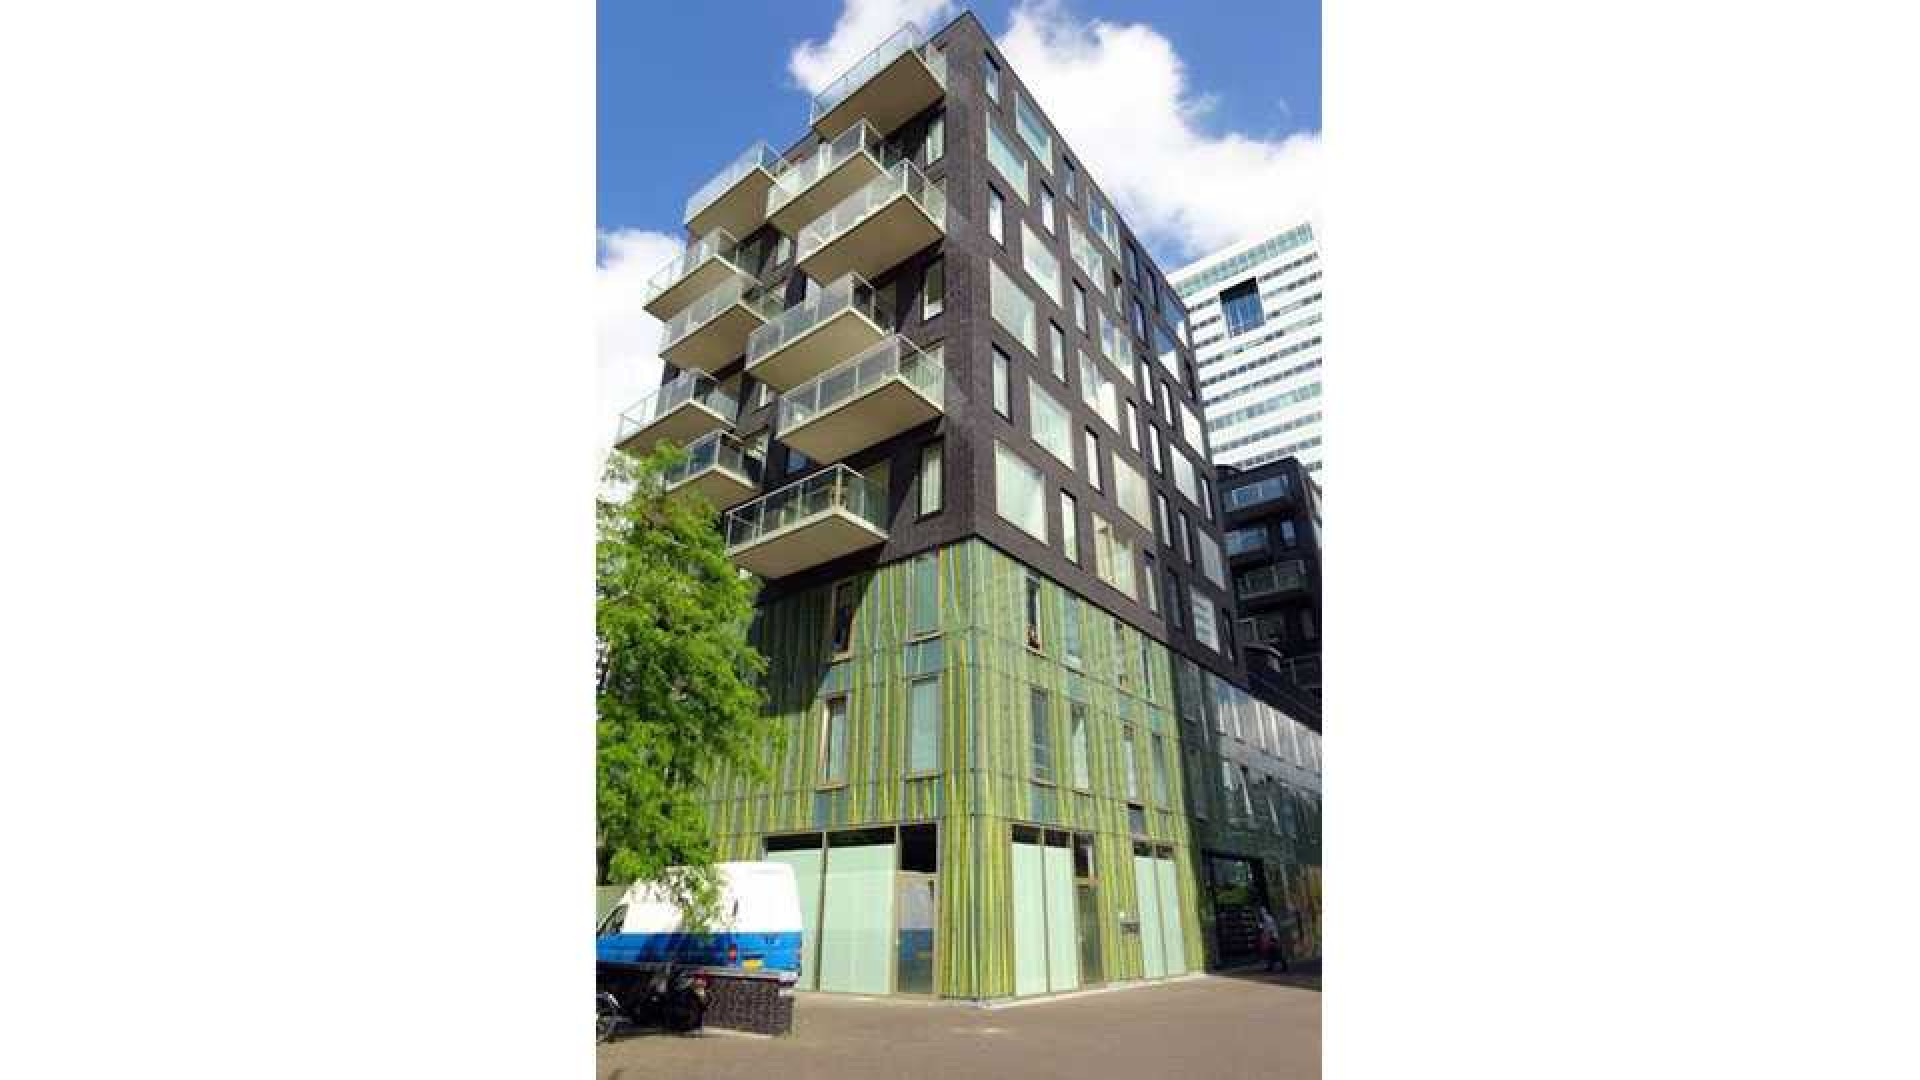 Ajax voetballer Joel Veltman huurt zeer luxe appartement aan de Zuid As in Amsterdam. Zie foto's 6